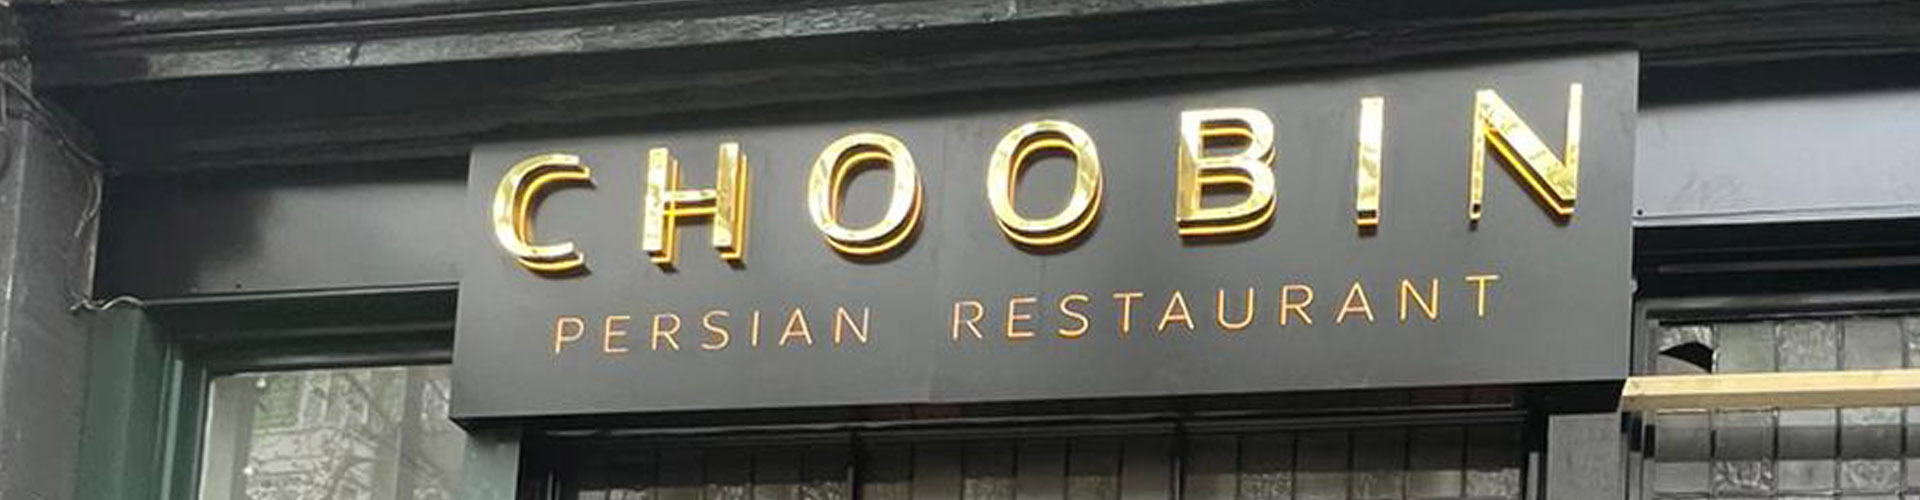 Choobin Persian restaurant London, shop front signage, golden letters backlit sign.